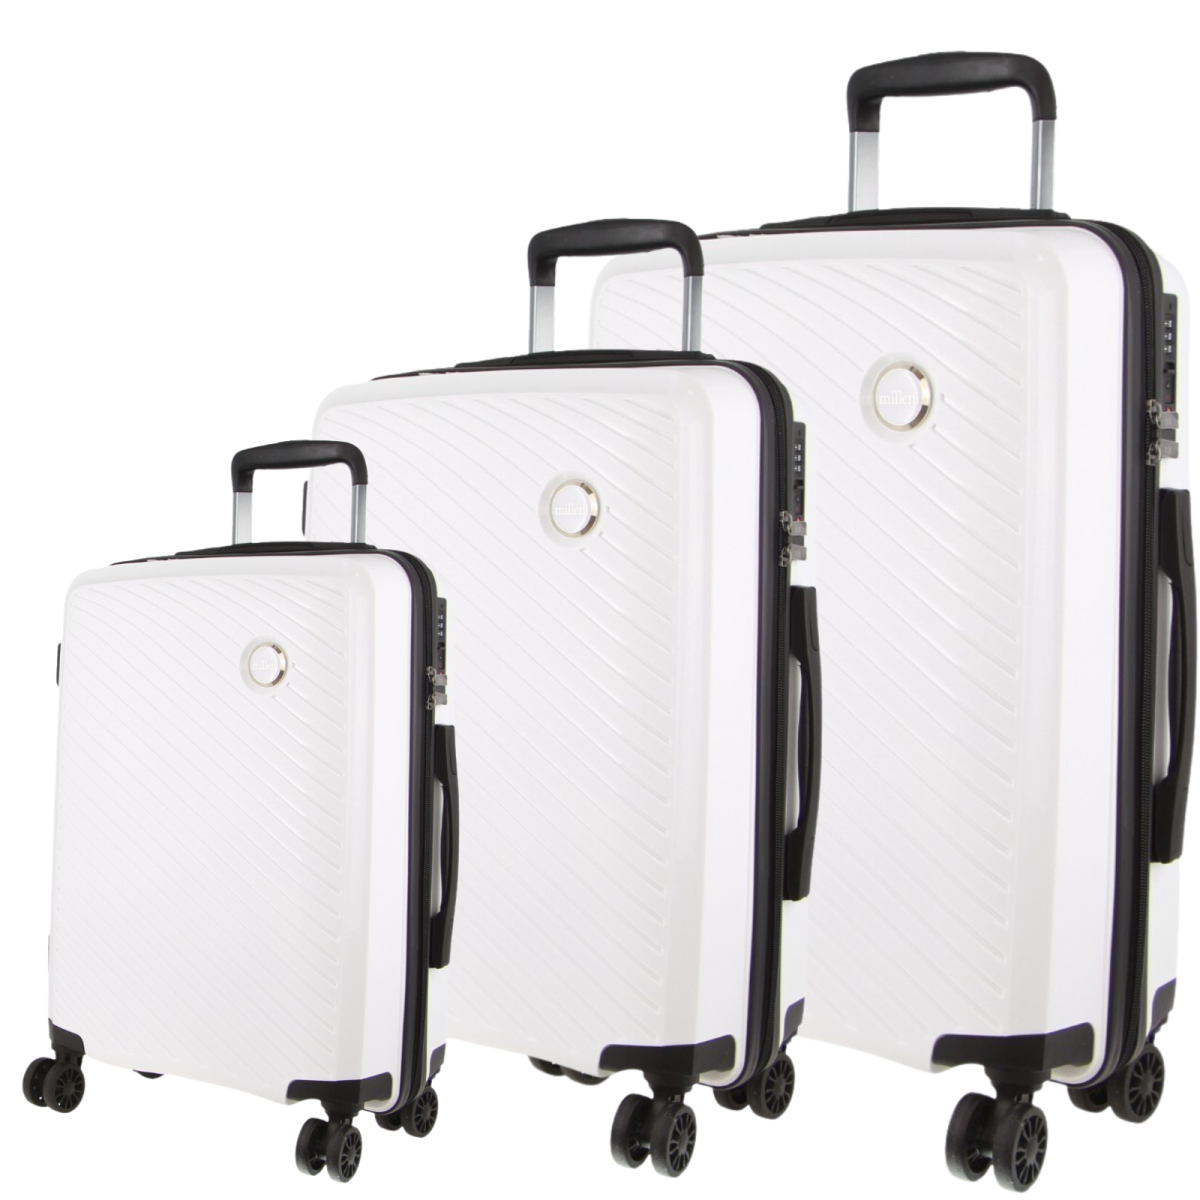 Hardshell 3-Piece Luggage Bag Travel Carry On Suitcase – White